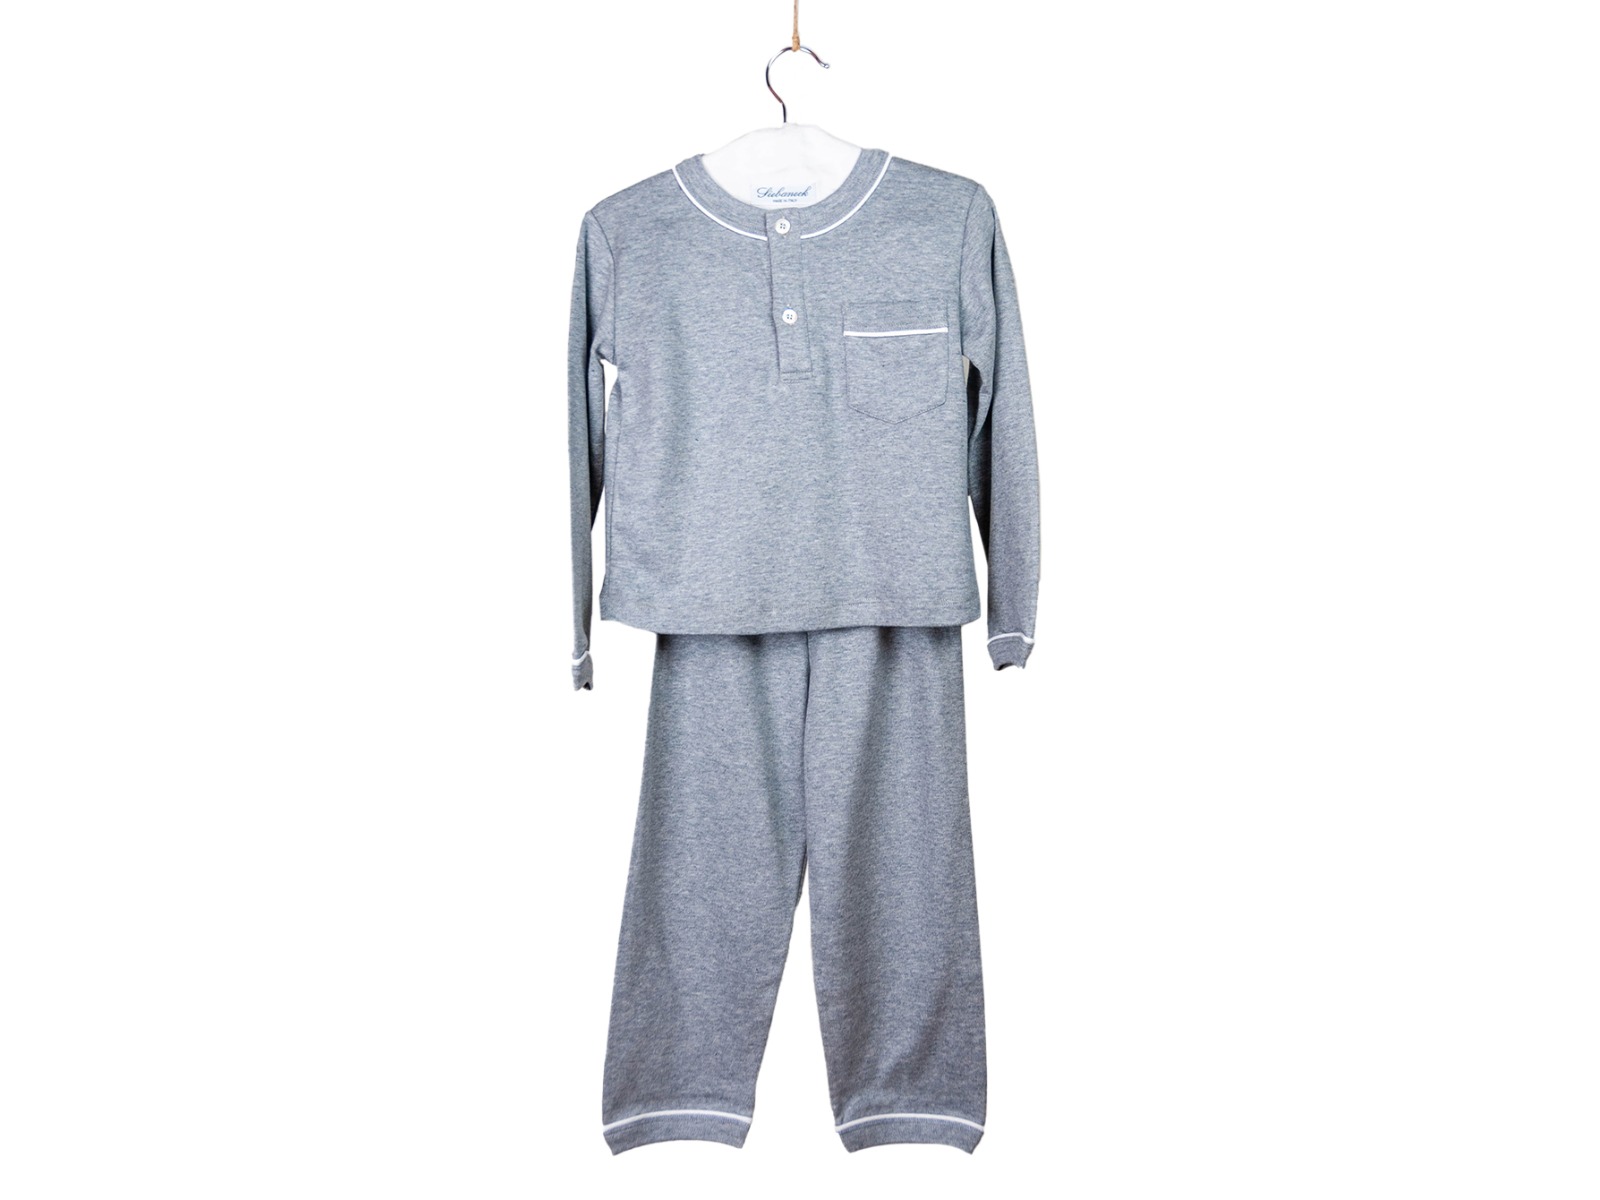 Siebaneck, i pigiami artigianali italiani: - bambino - mod.2 Bis bambino grigio profilo bianco 